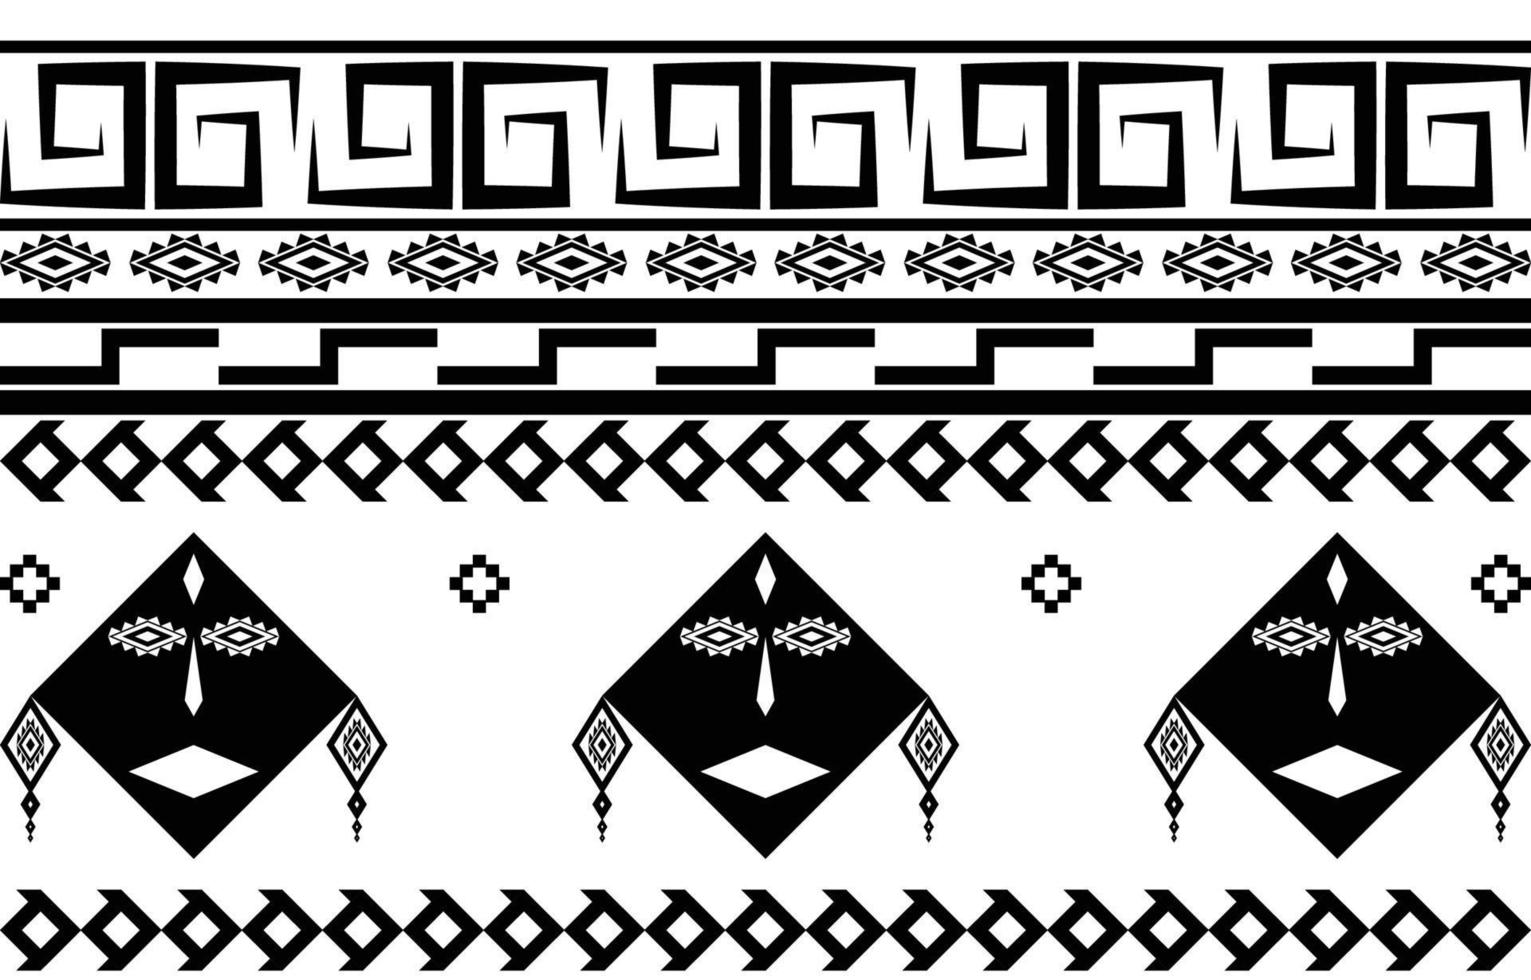 stammesgesicht schwarz-weiß abstraktes ethnisches geometrisches musterdesign für hintergrund oder tapete.vektorillustration zum druck von stoffmustern, teppichen, hemden, kostümen, turban, hüten, vorhängen. vektor